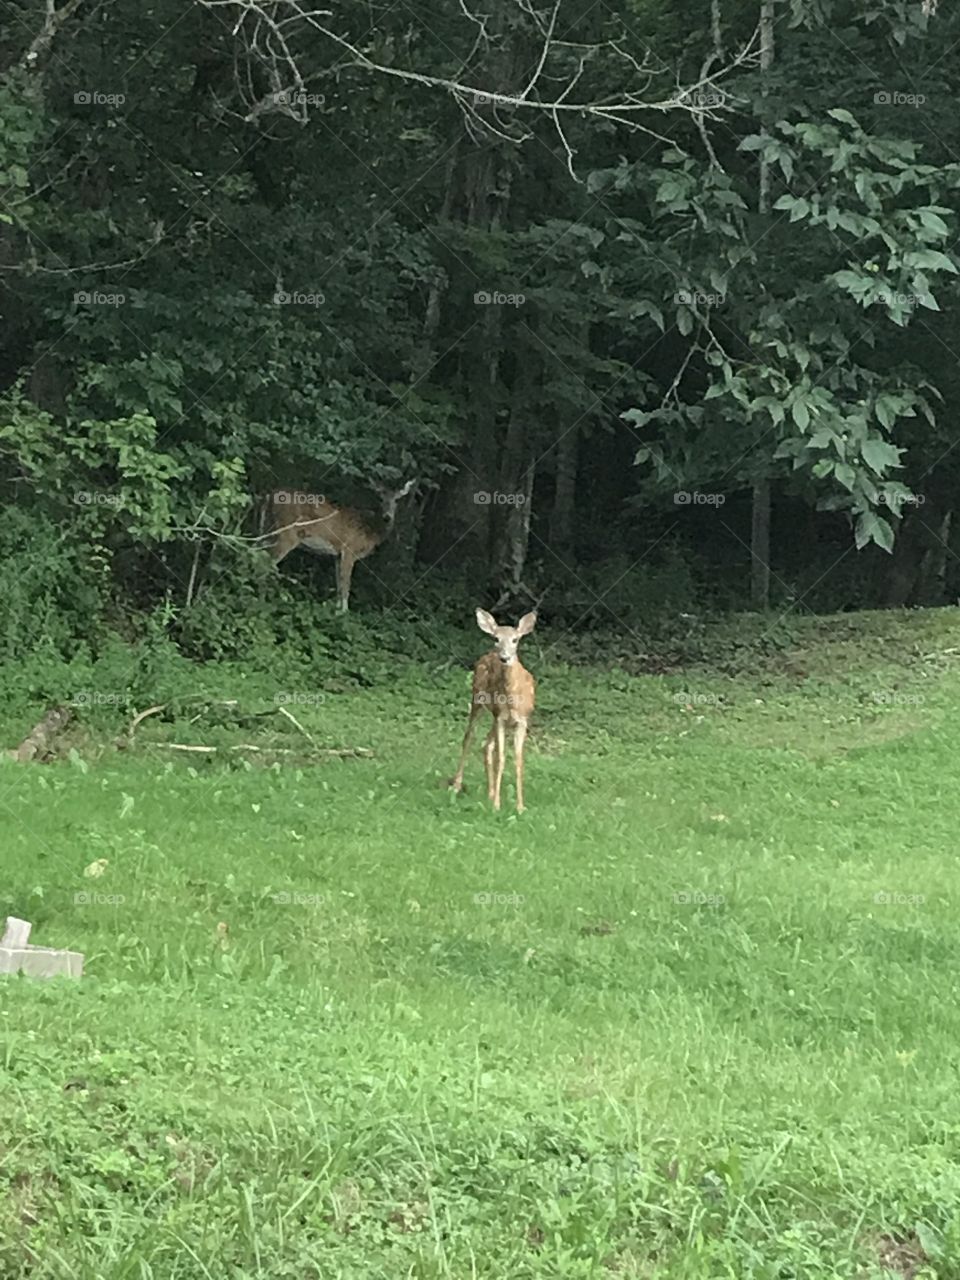 Deer in their natural habitat 